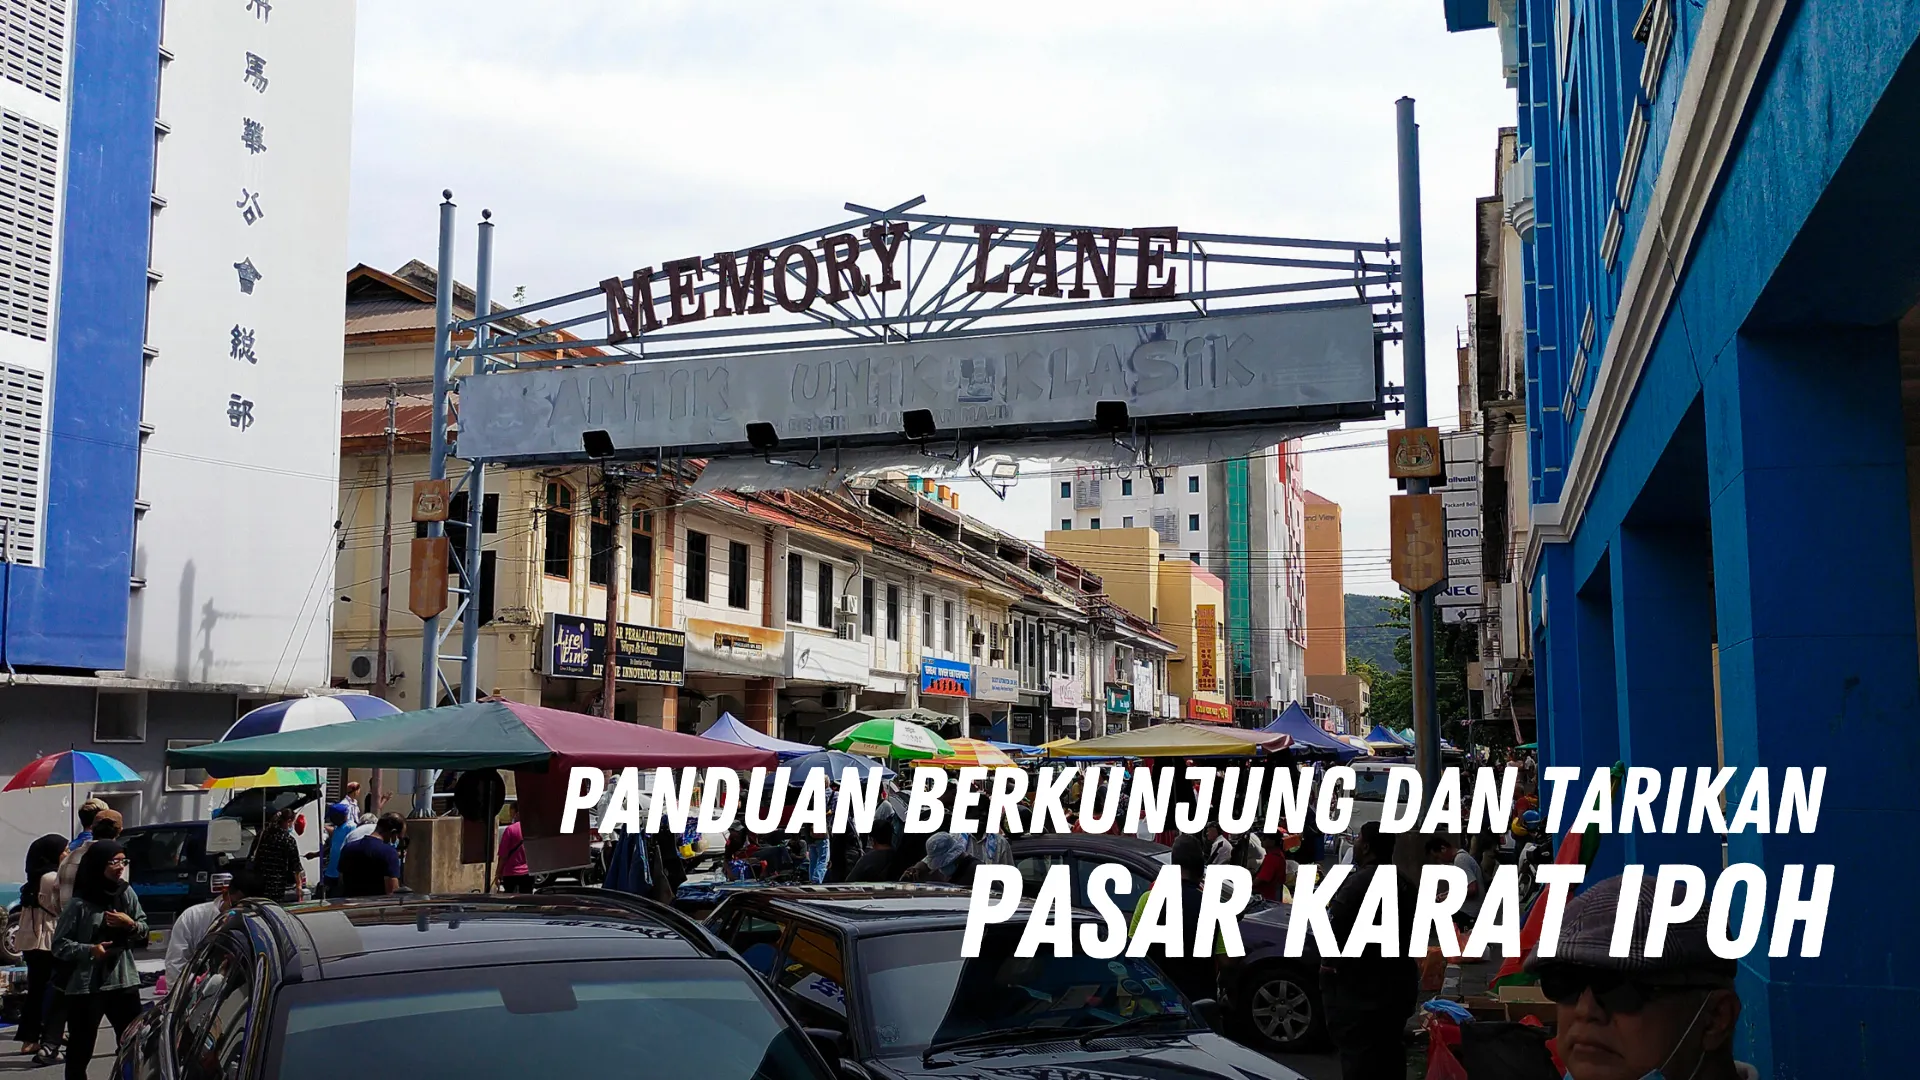 Review Pasar Karat Ipoh Malaysia